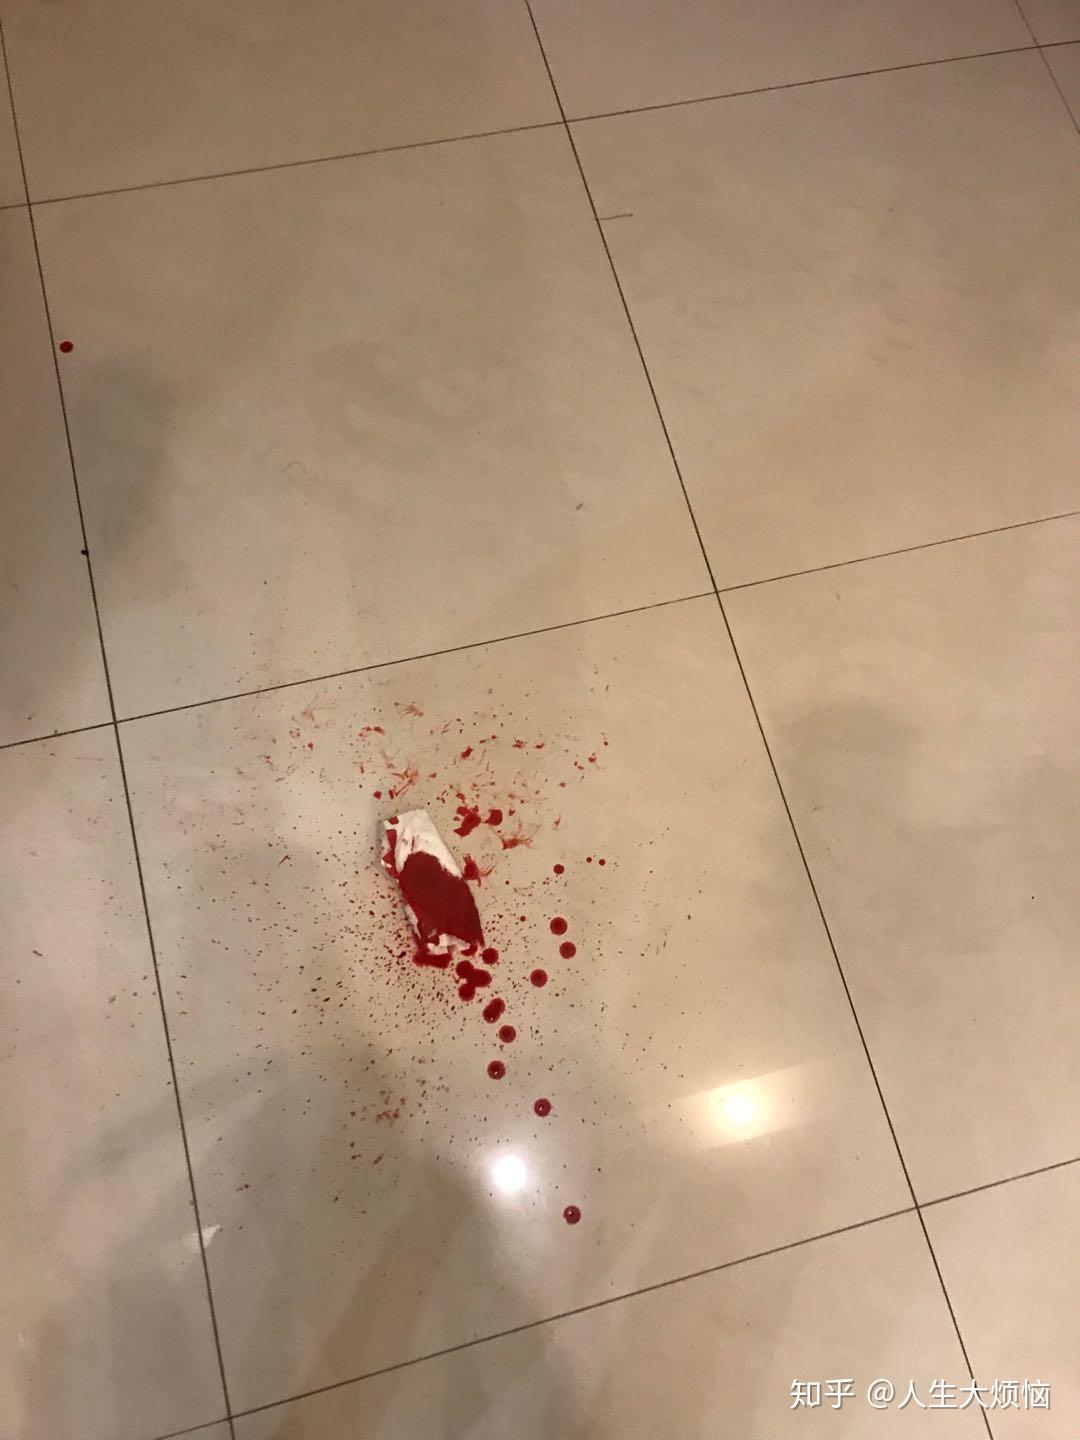 血滴在地板的真实图片图片